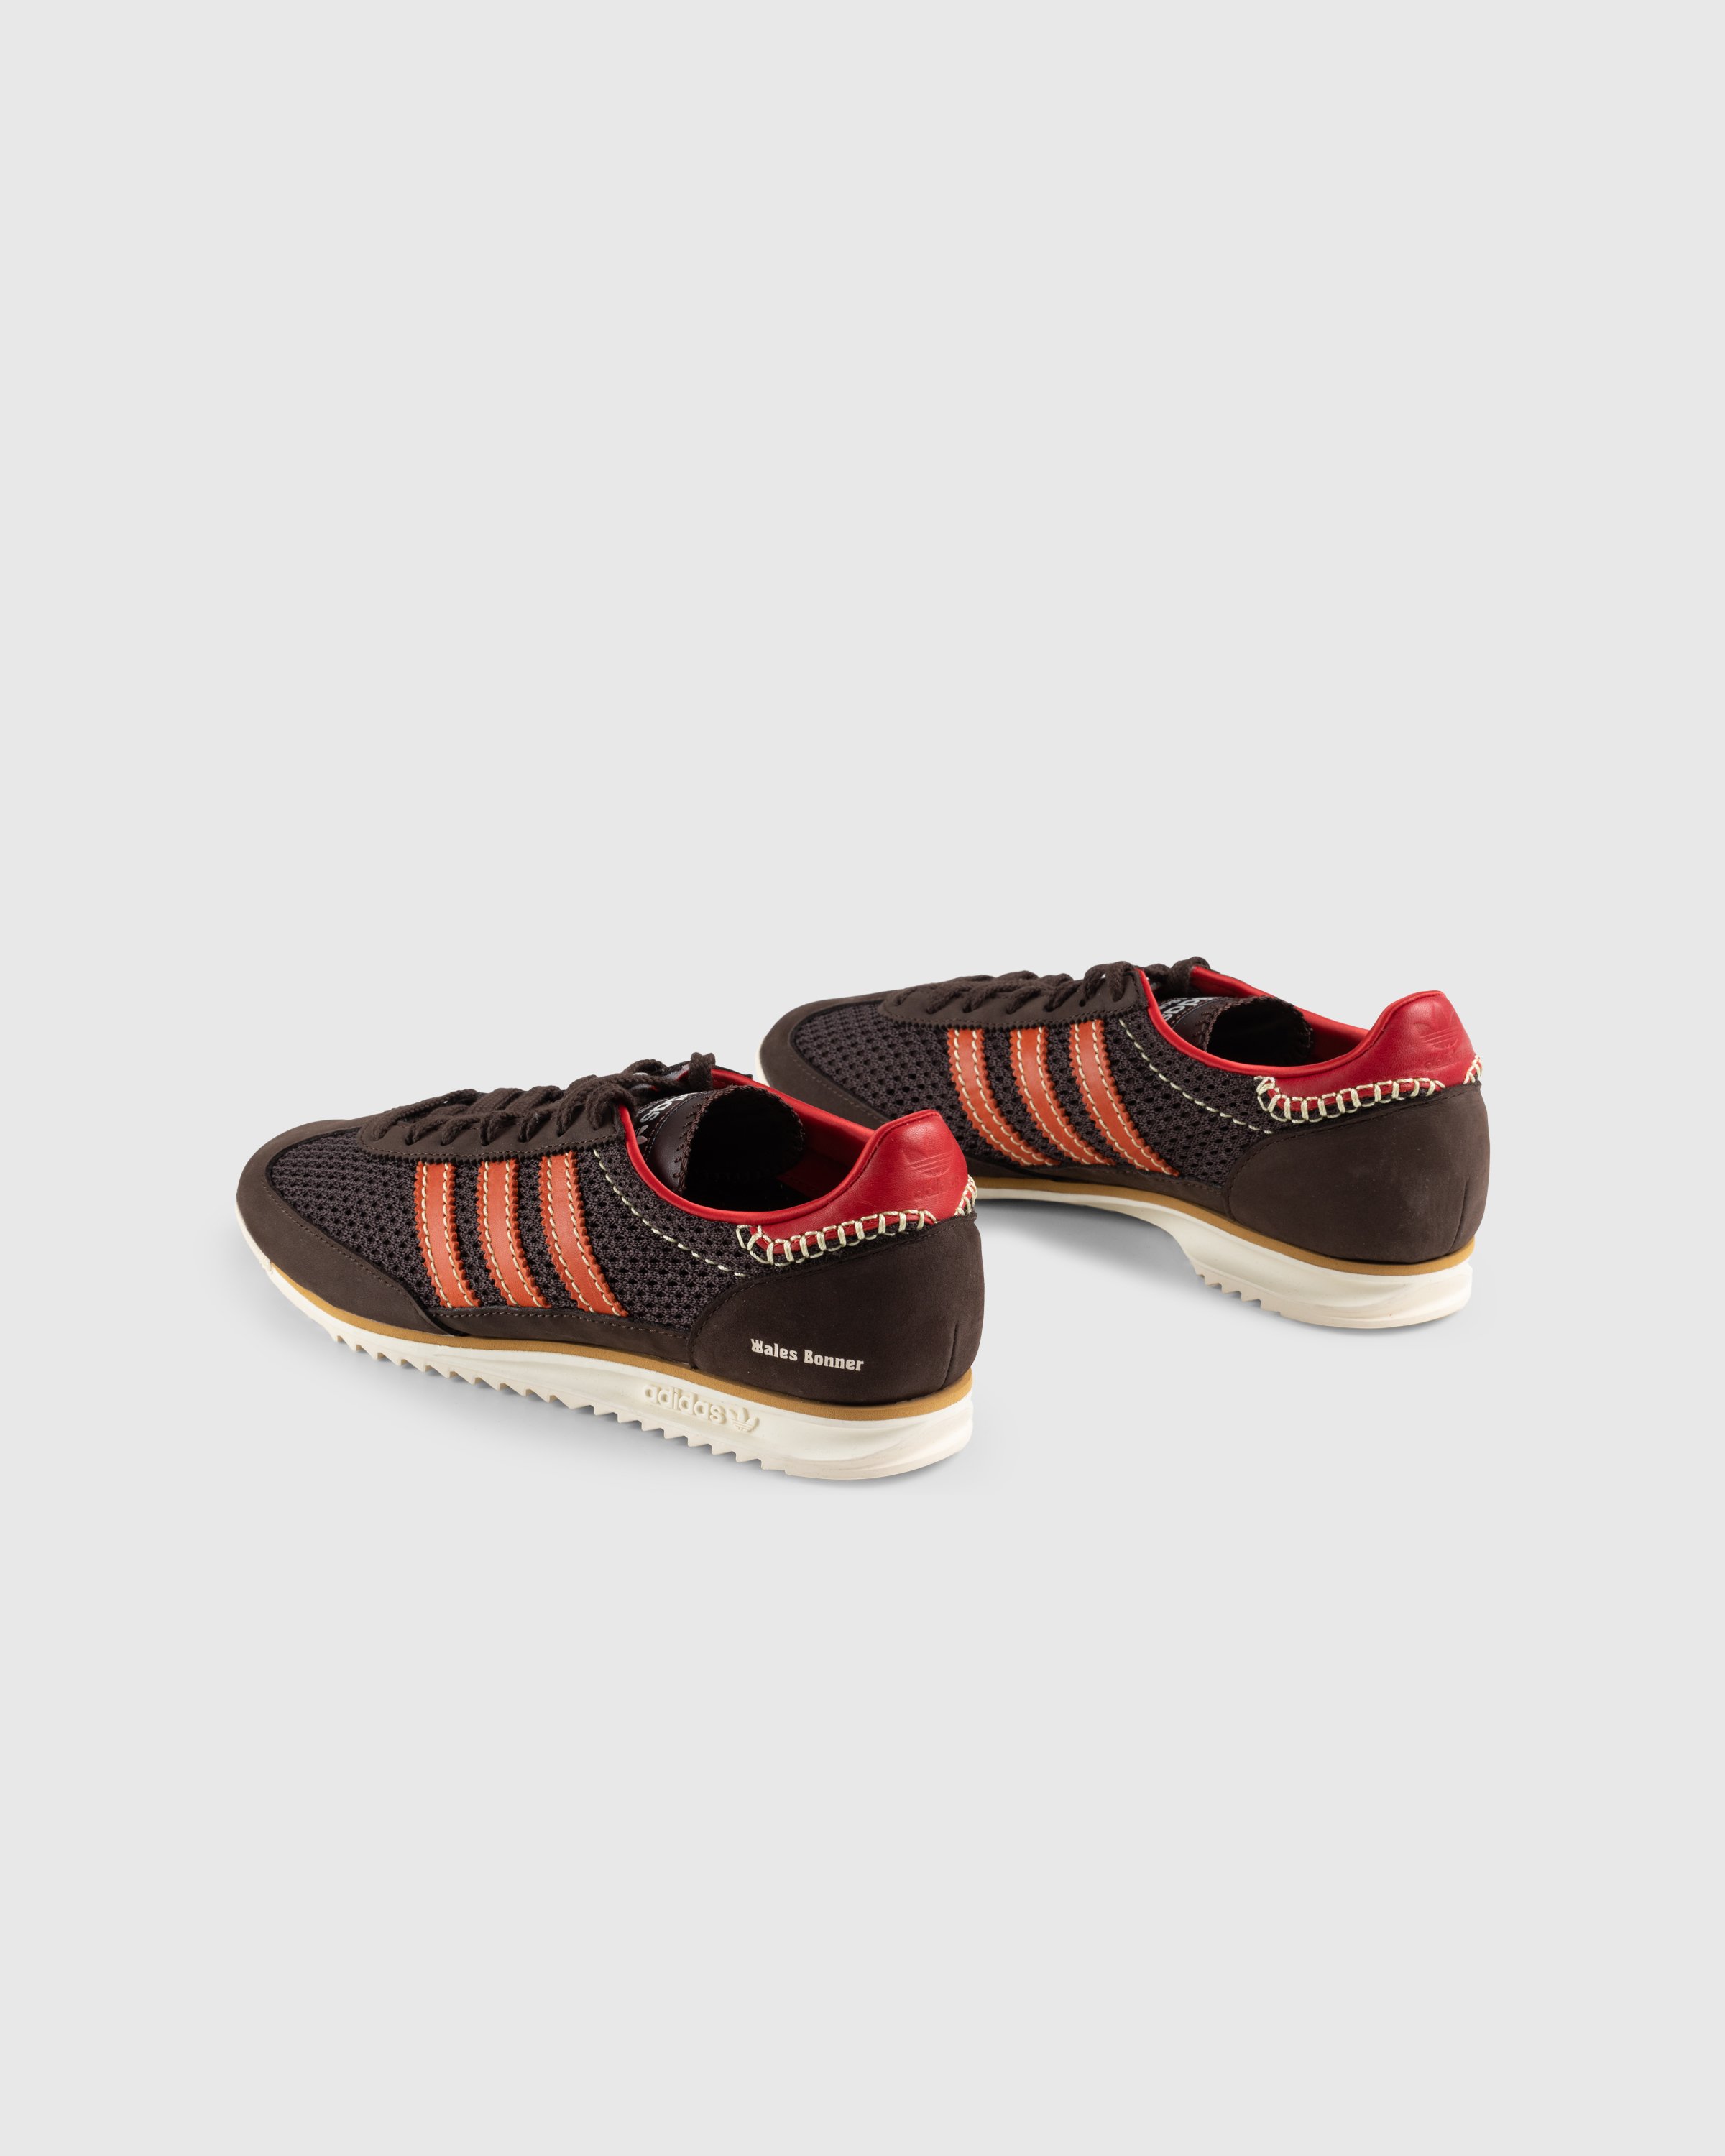 Adidas x Wales Bonner - SL72 Knit Dark Brown - Footwear - Brown - Image 4